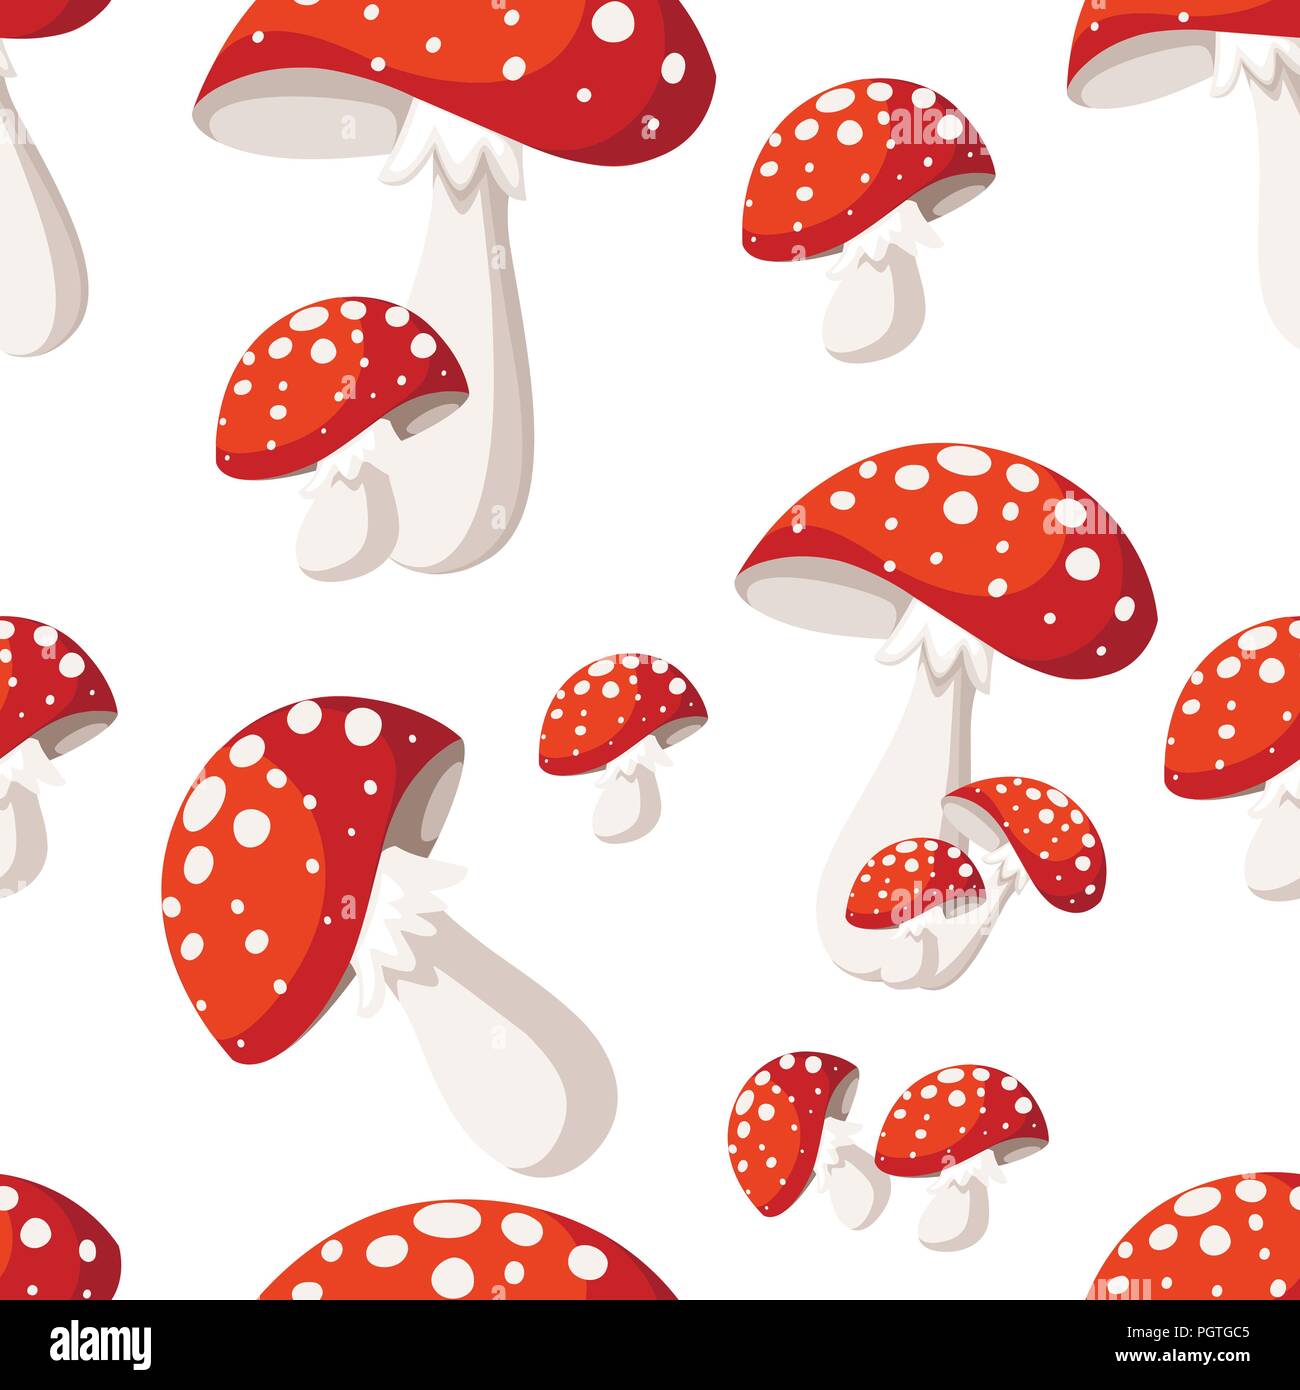 Nahtlose Muster. Amanita muscaria Pilze Cartoon Stil. Flache Vector Illustration auf weißem Hintergrund. Stock Vektor